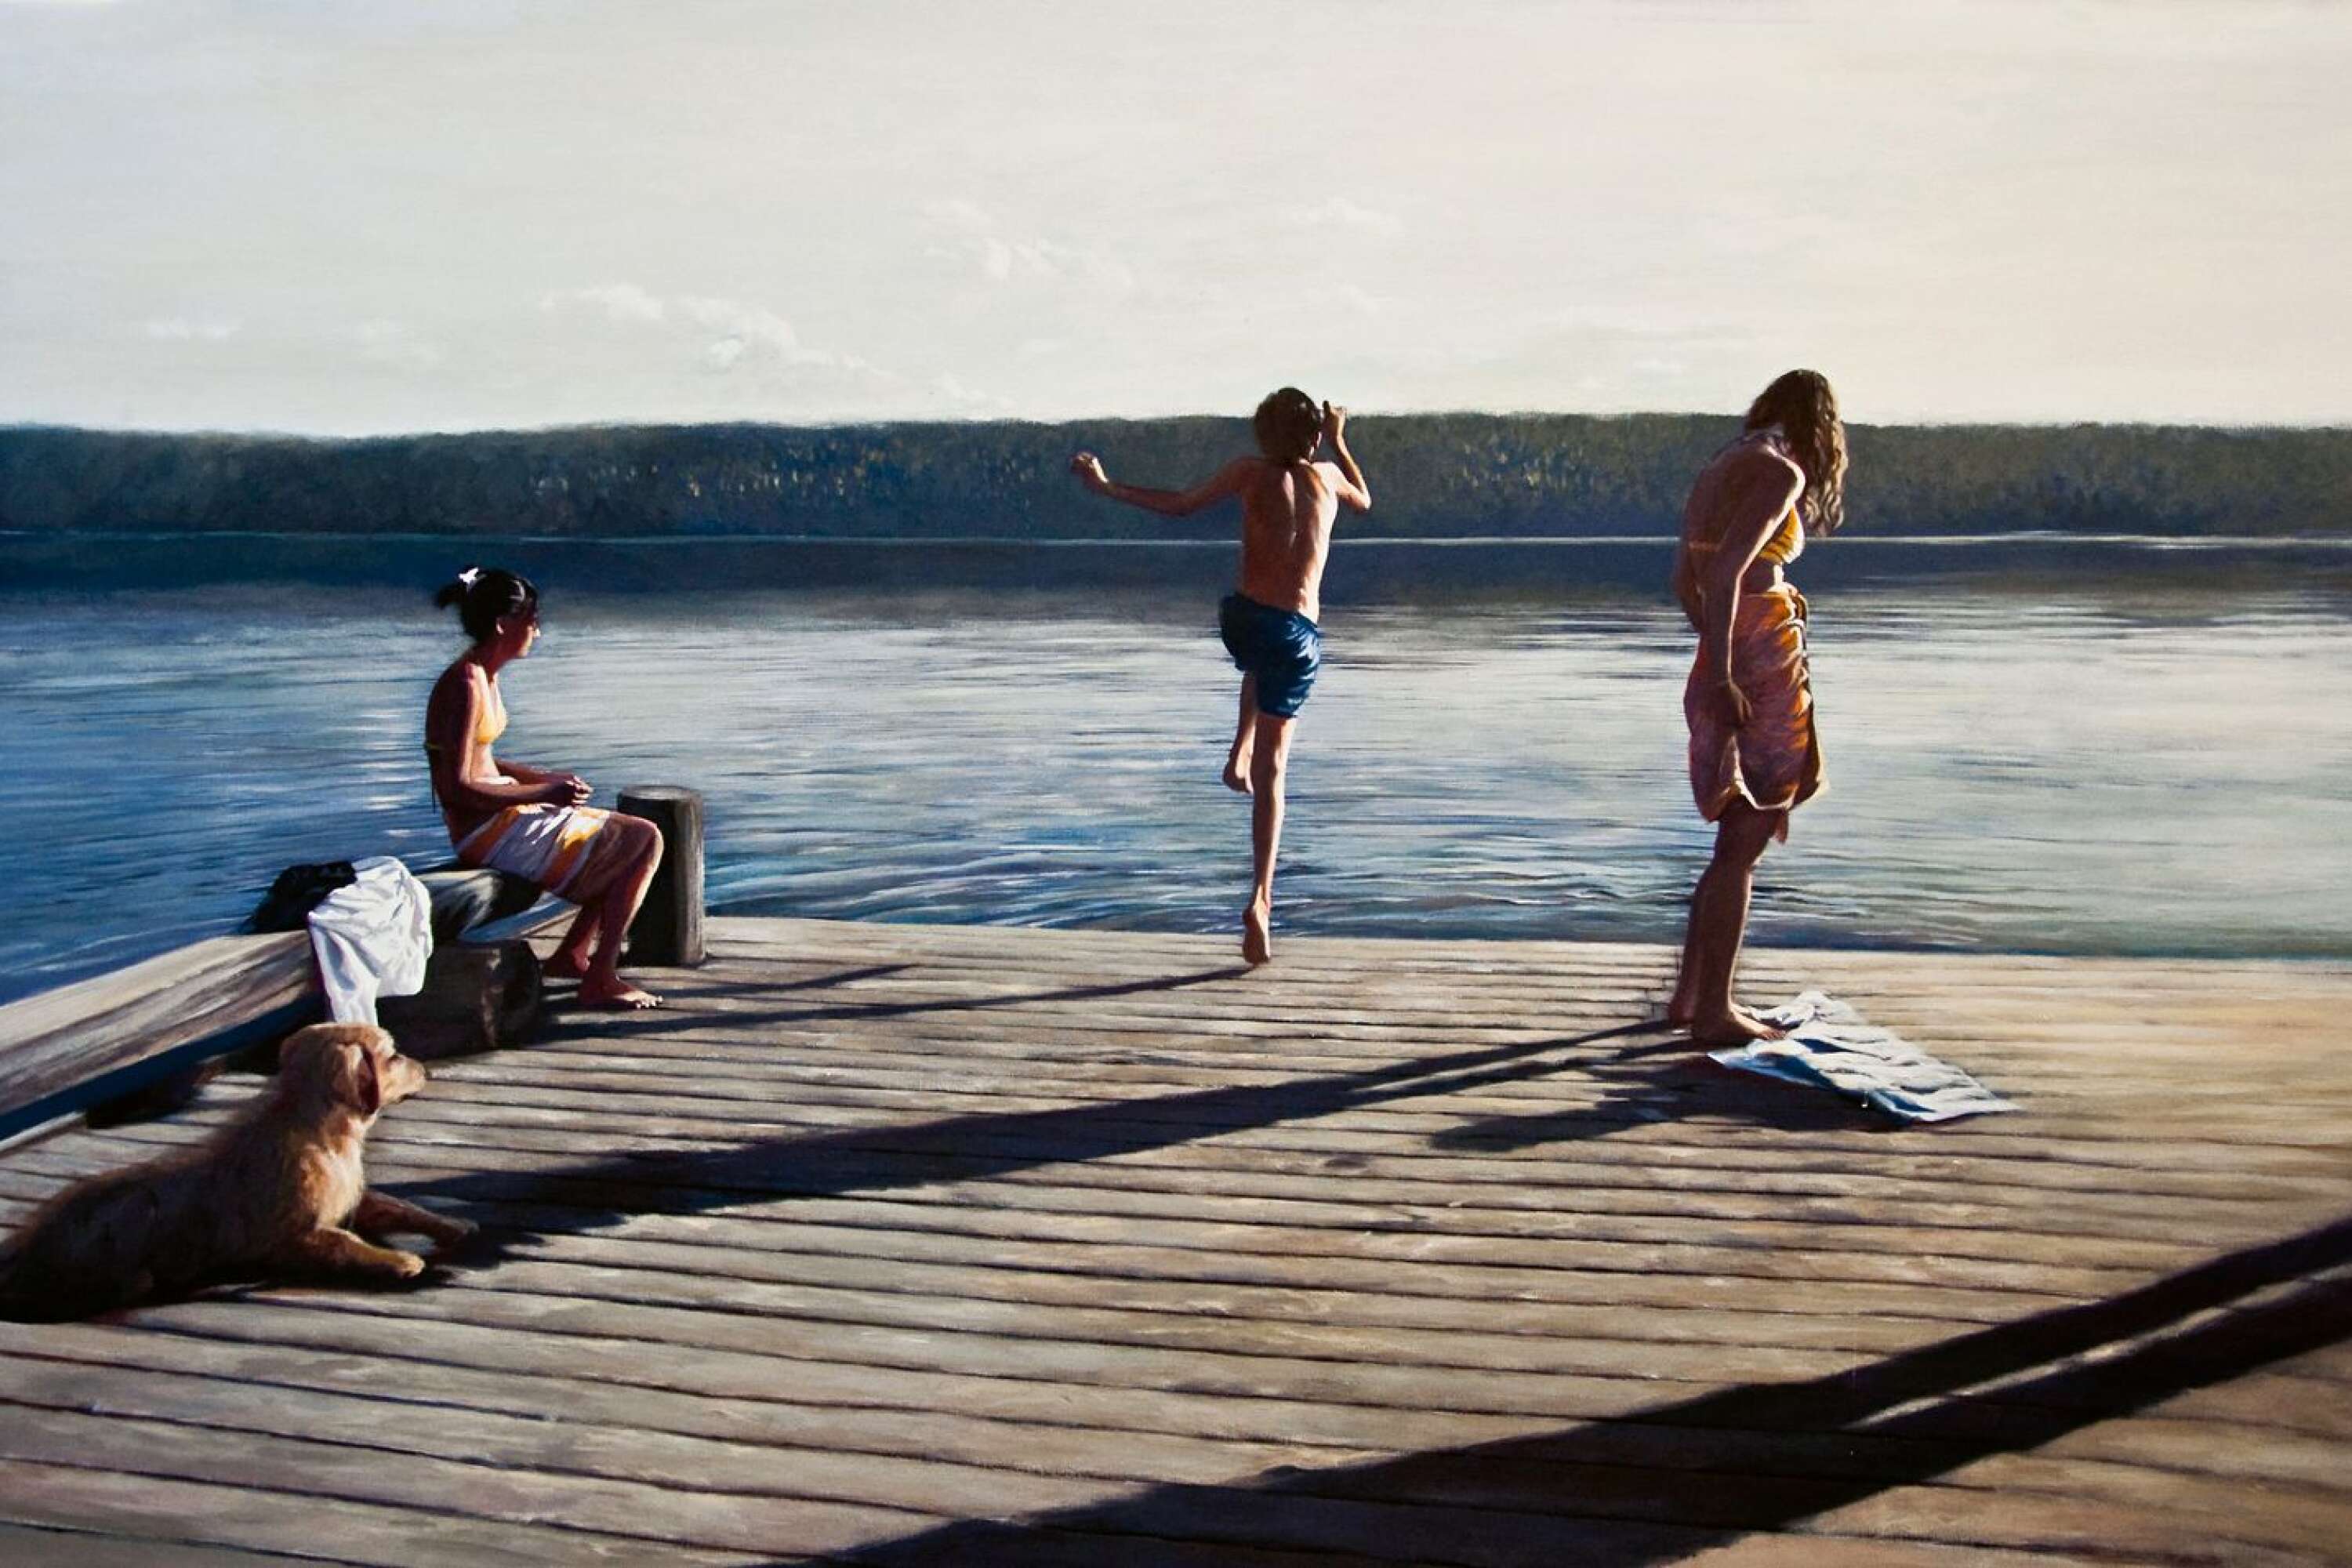 Karin Broos bild Hoppet 2 från 2011 är ett av exemplen i boken på moderna tiders måleri i landskapet.